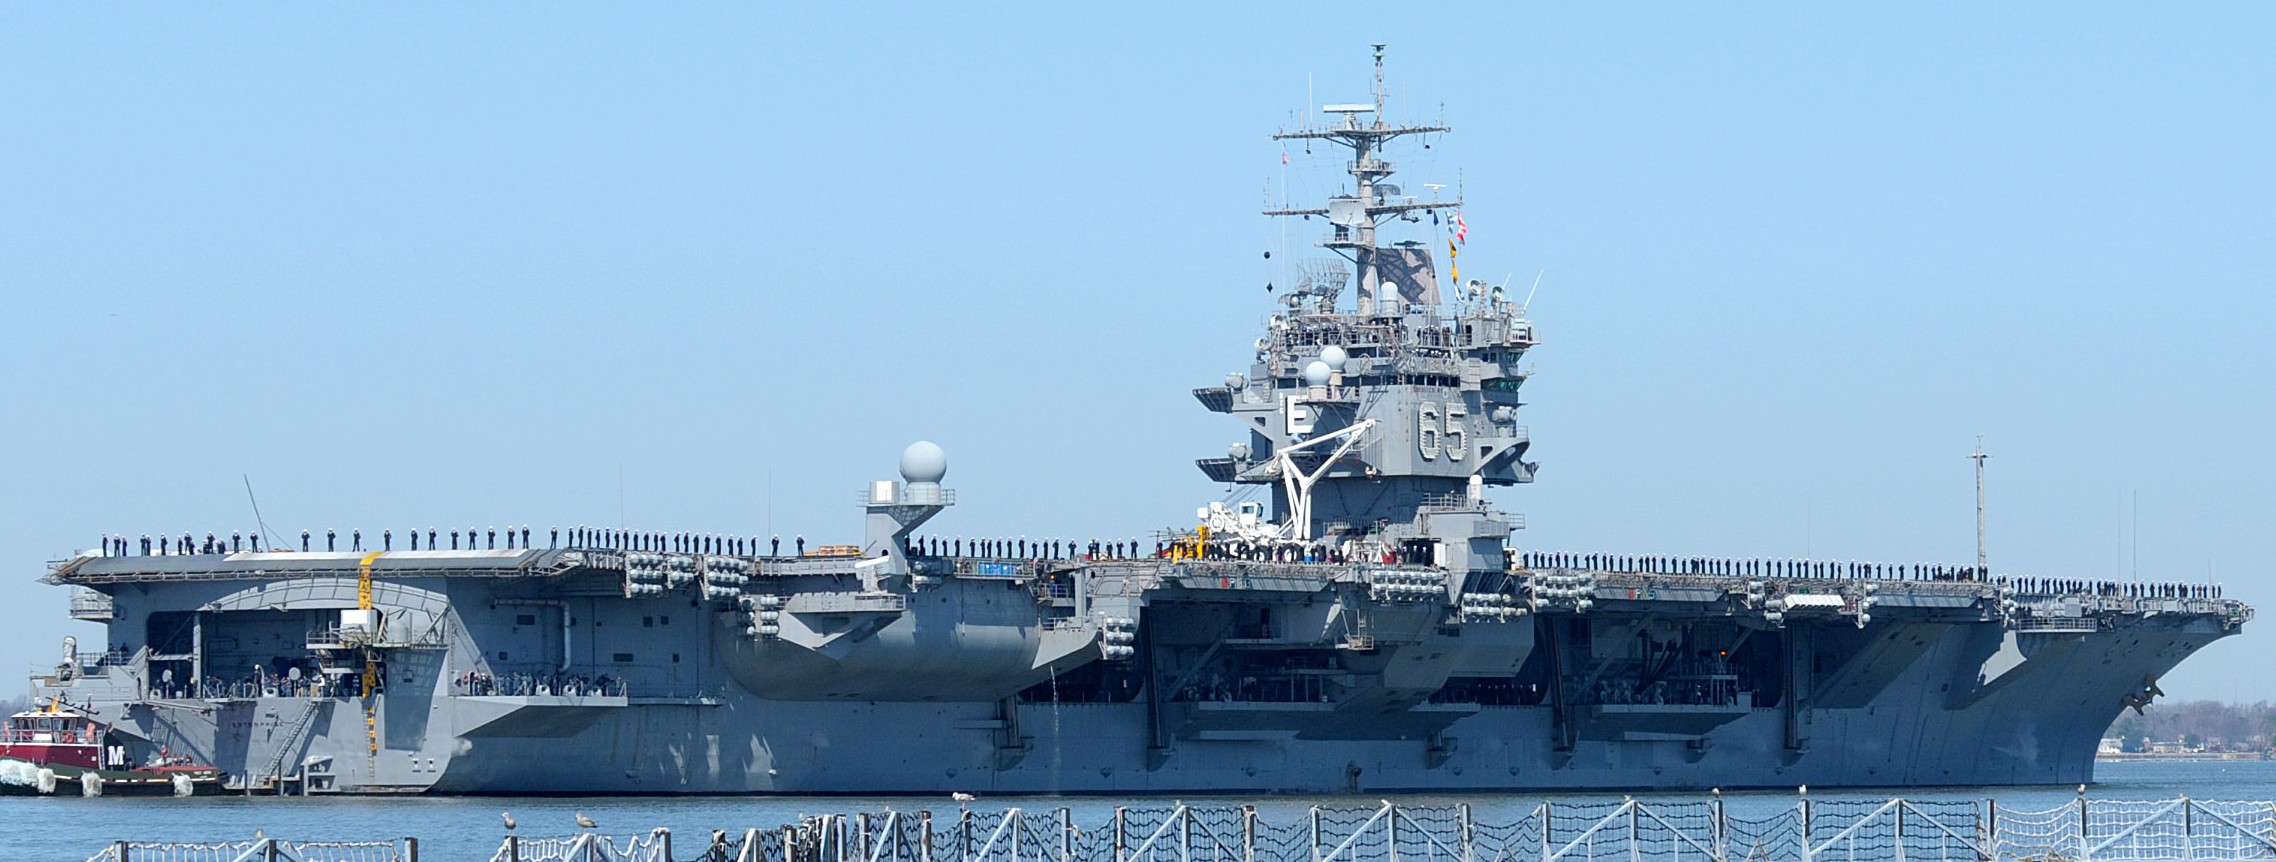 uss enterprise cvn-65 aircraft carrier norfolk naval station virginia 2012 55